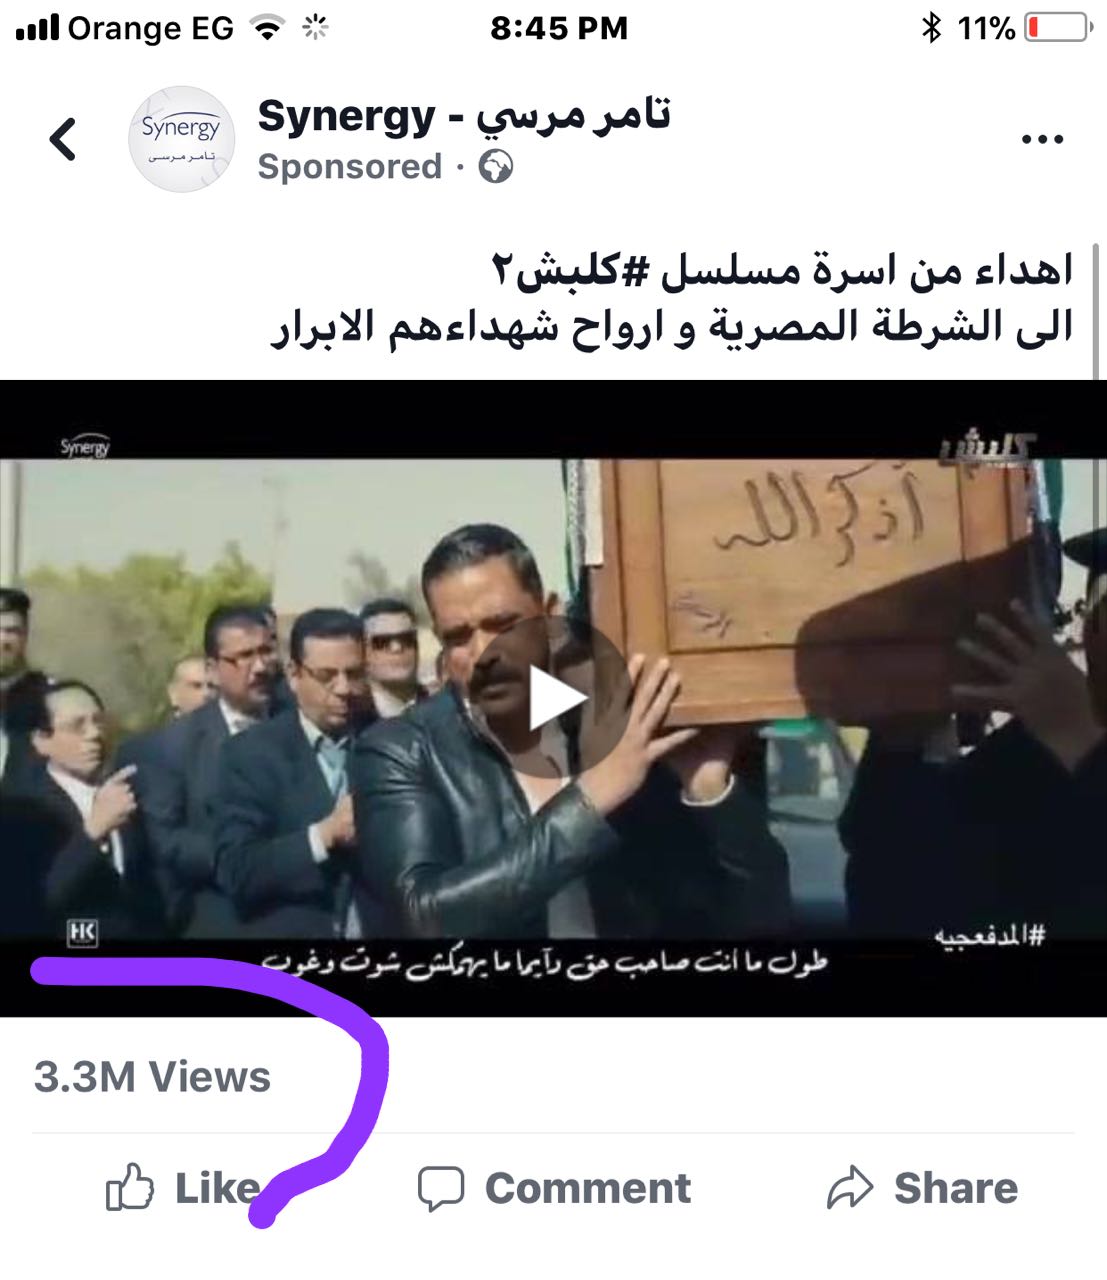   ٣ مليون ونص مشاهدة لأغنية "كلبش" المهداة للشرطة المصرية